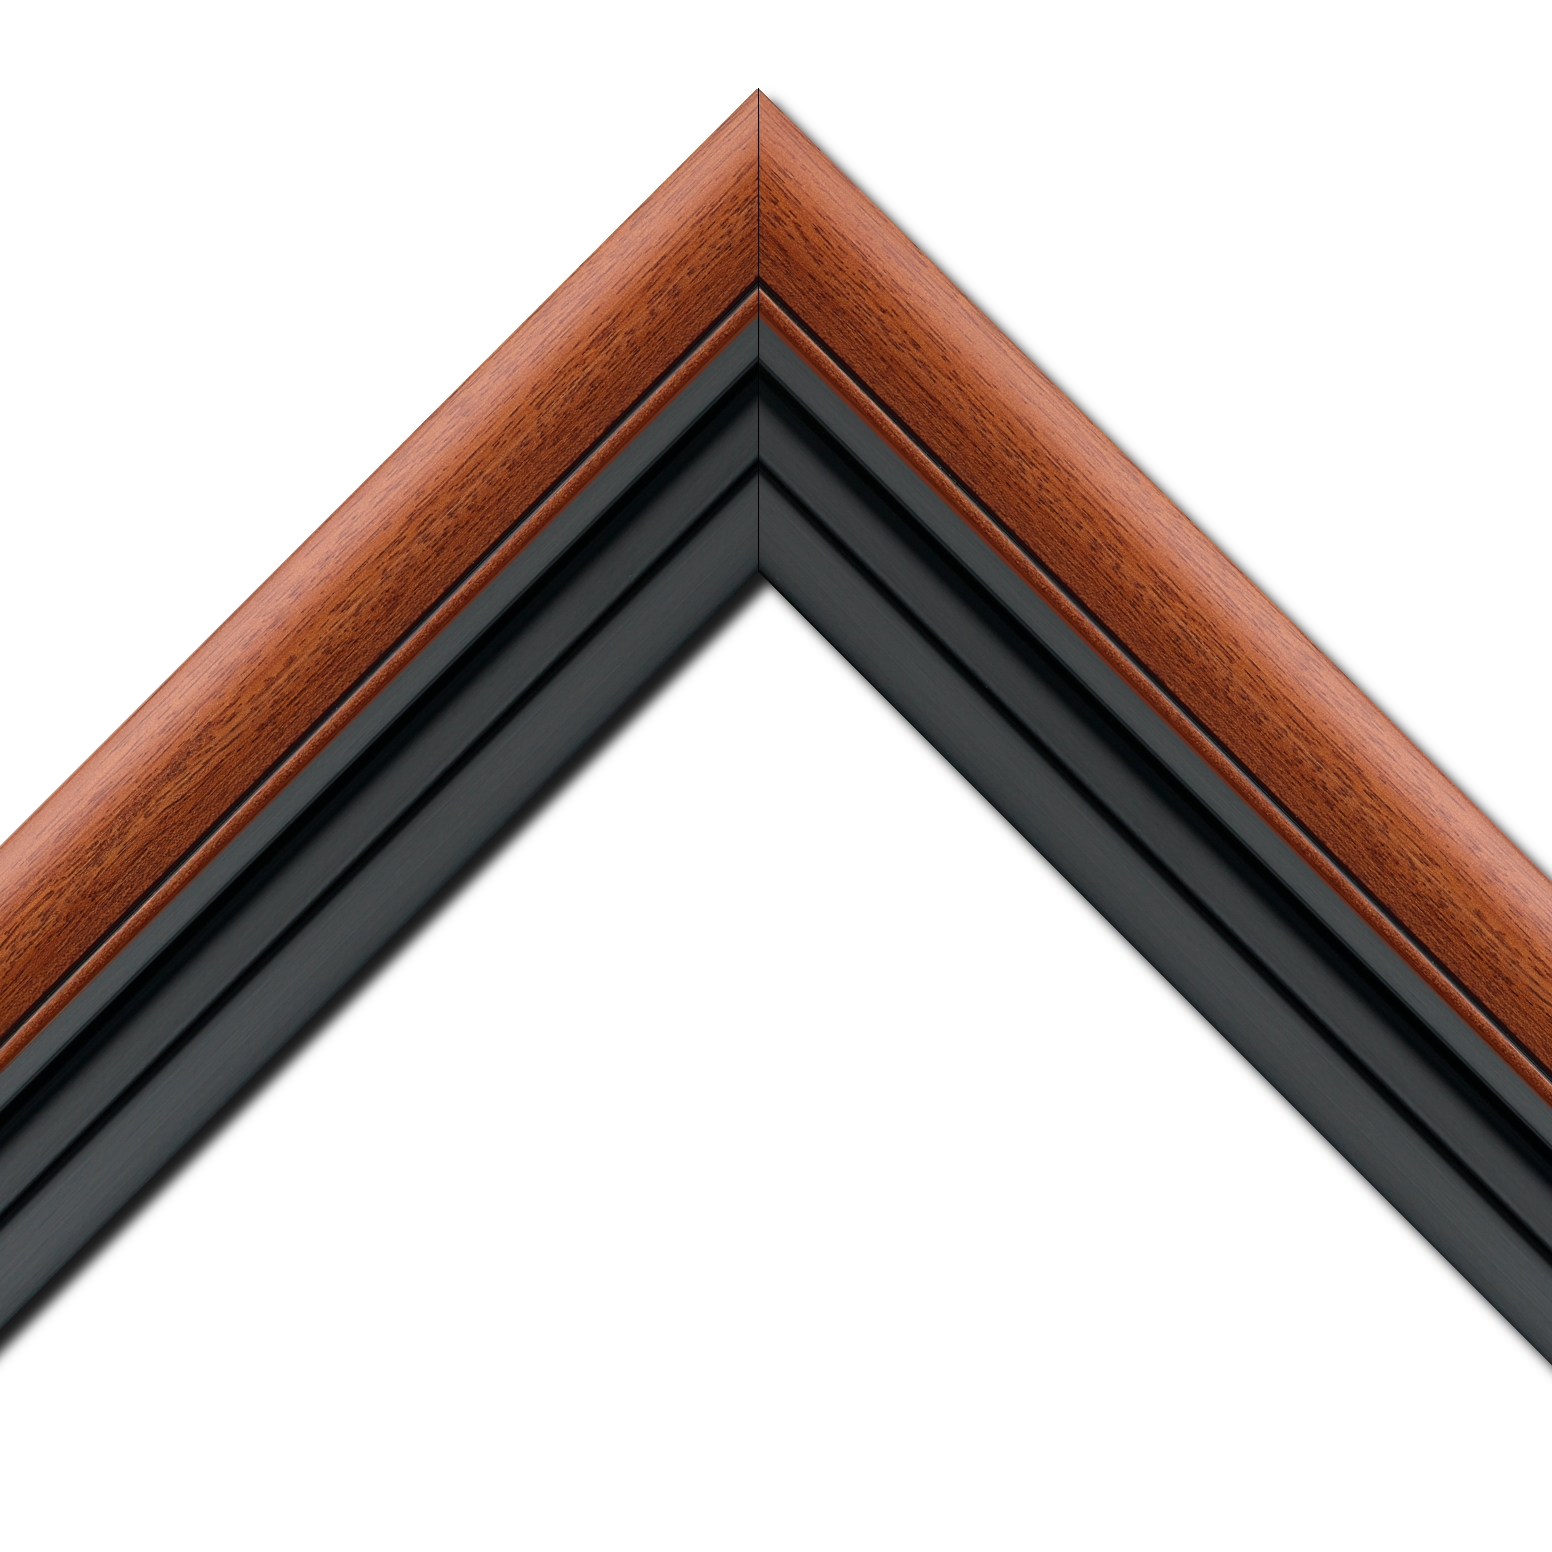 Caisse américaine pour peintures  americaine bois marron tons bois noir — 116 x 73